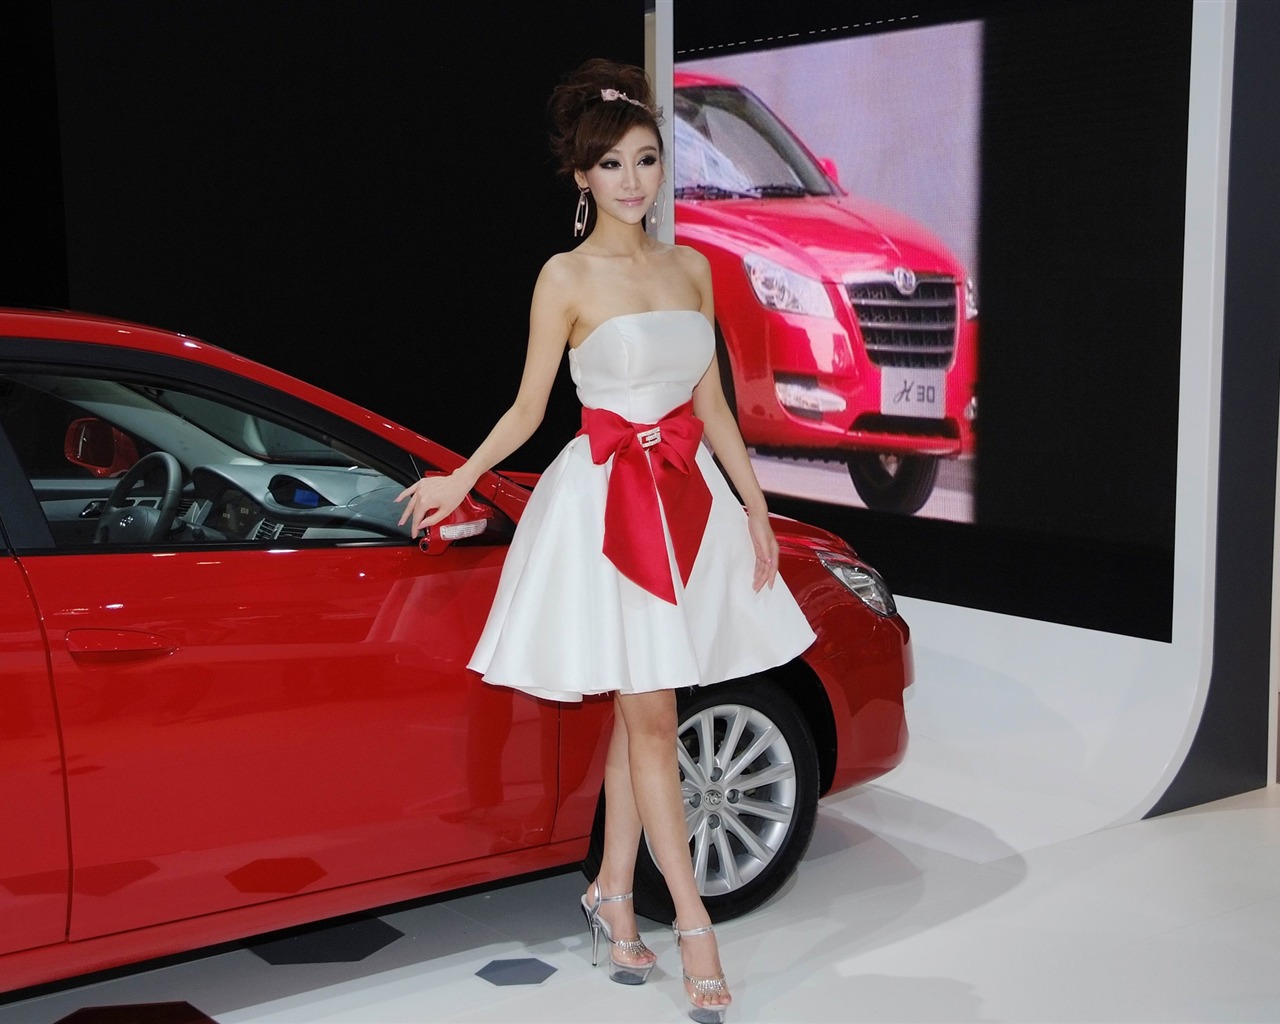 2010北京国际车展 美女车模 (螺纹钢作品)8 - 1280x1024